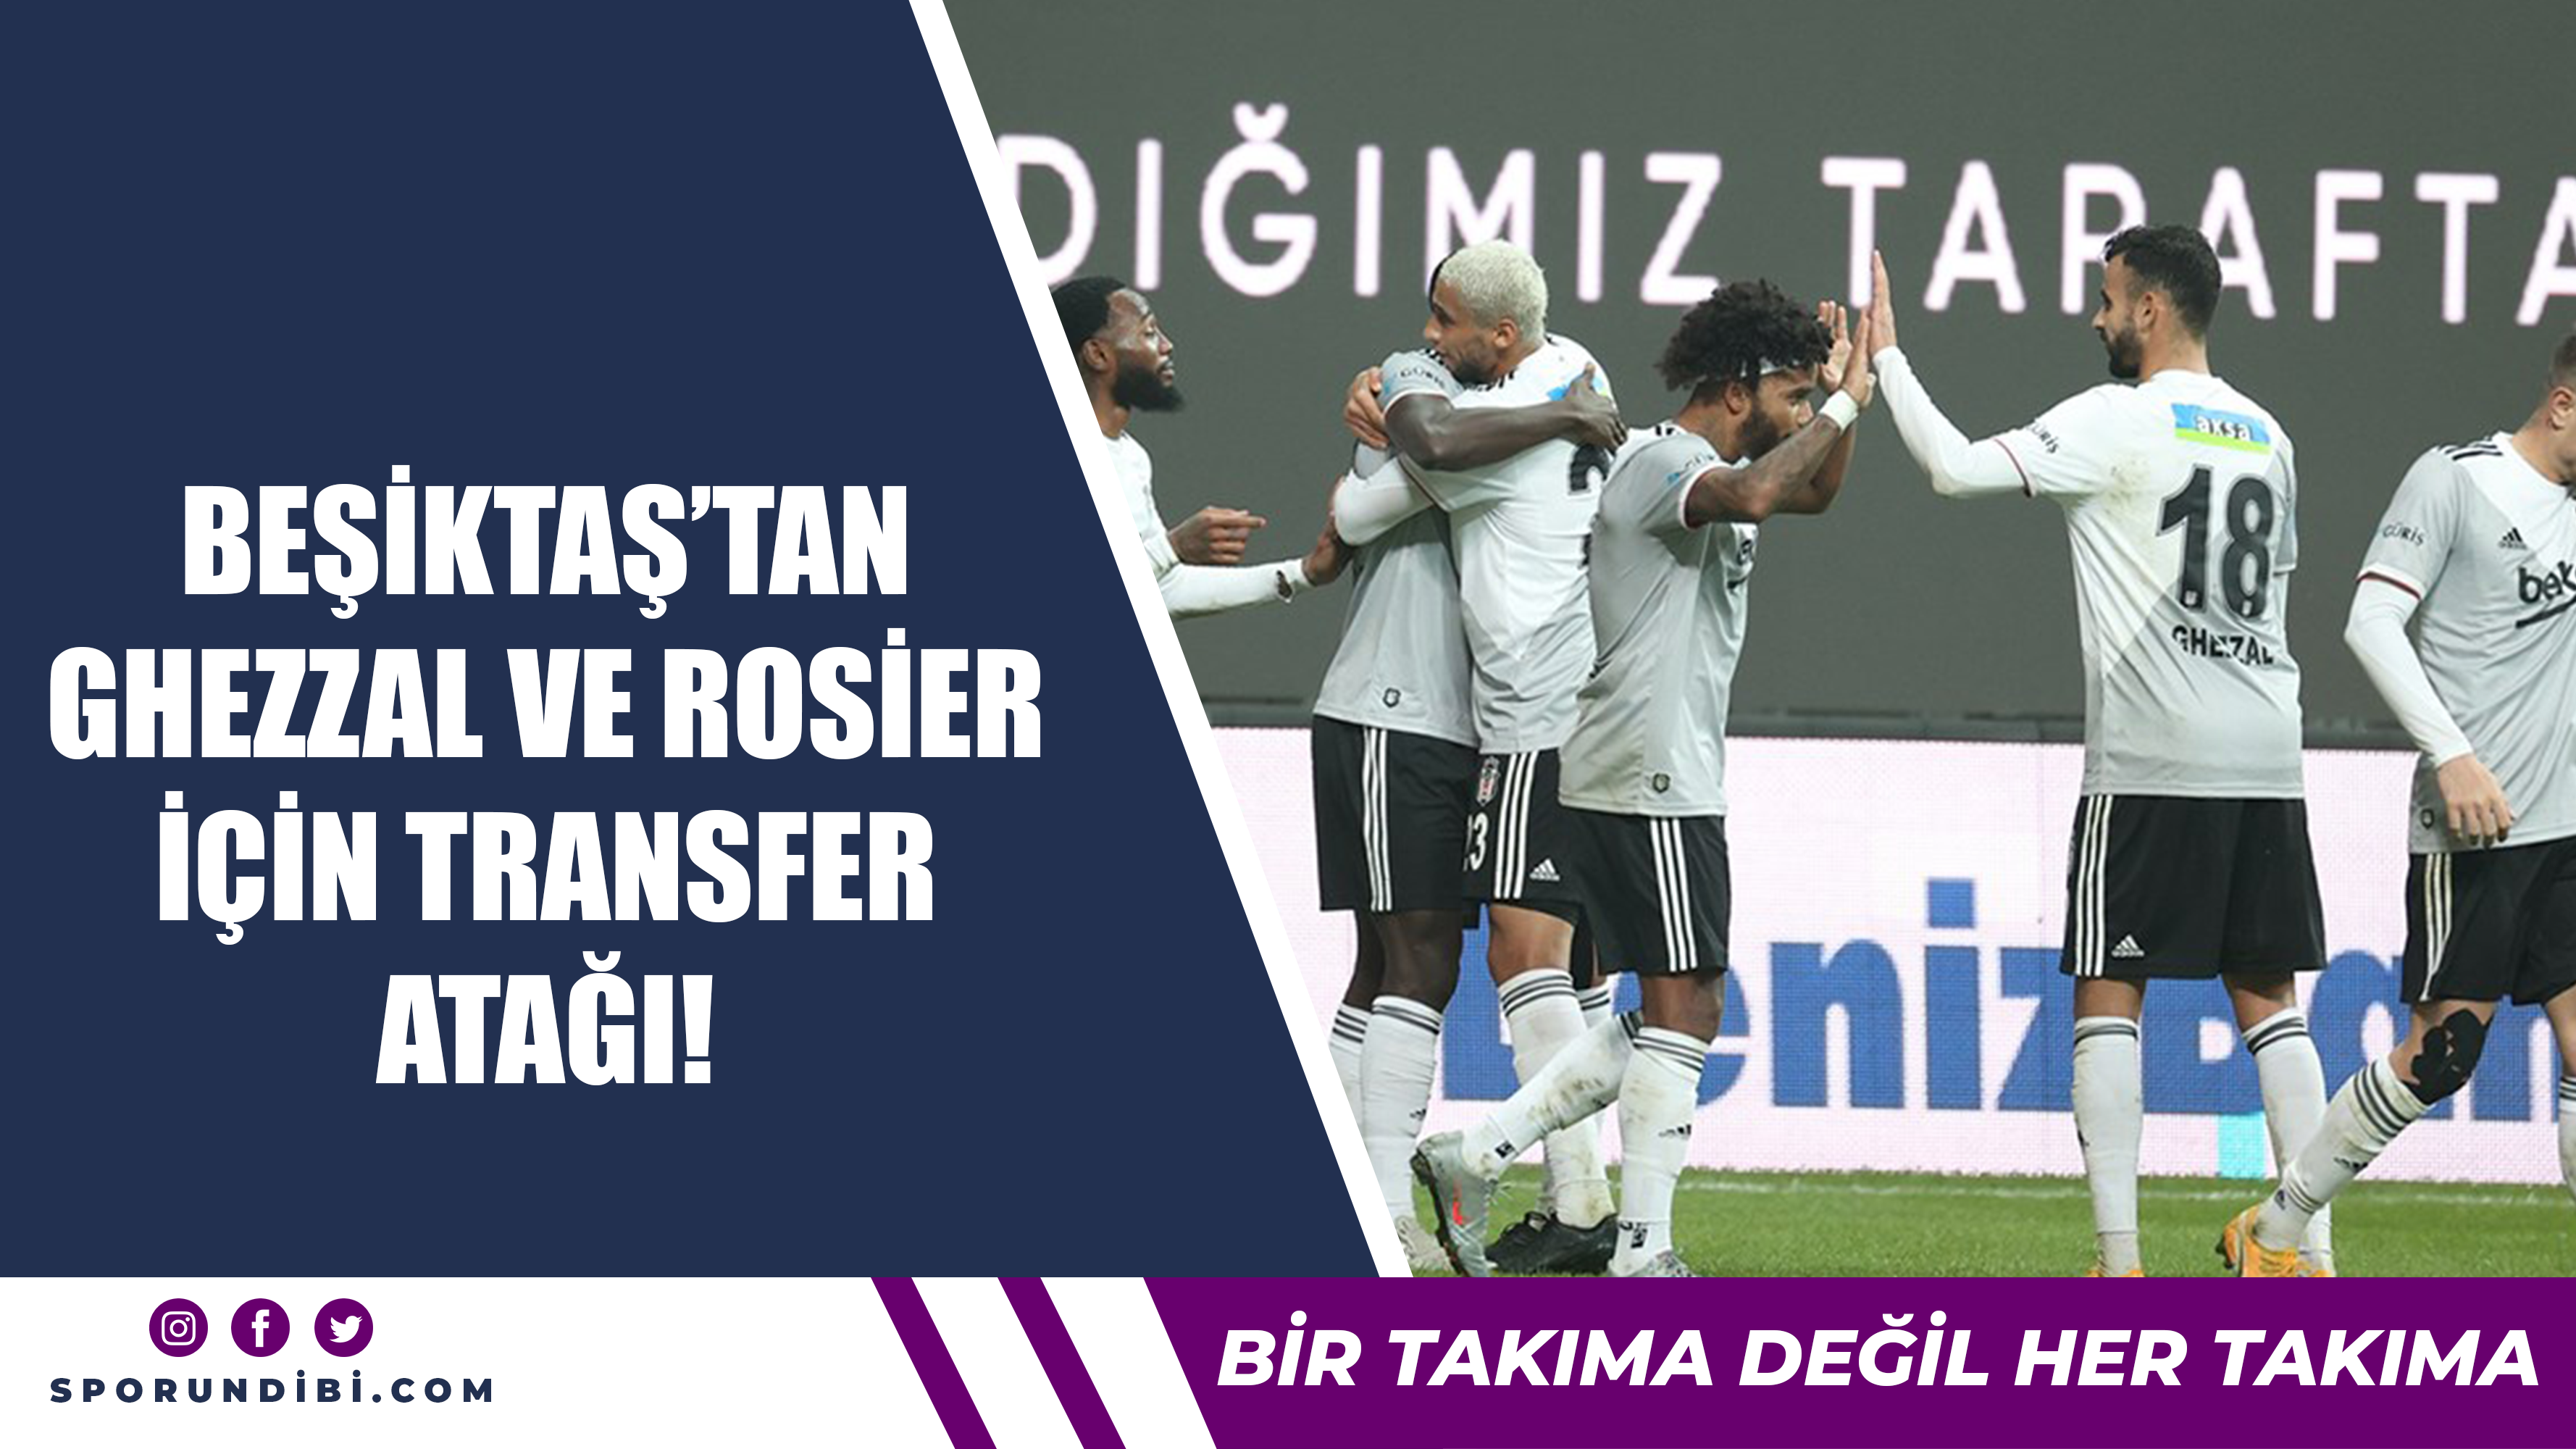 Beşiktaş'tan Ghezzal ve Rosier için transfer atağı!